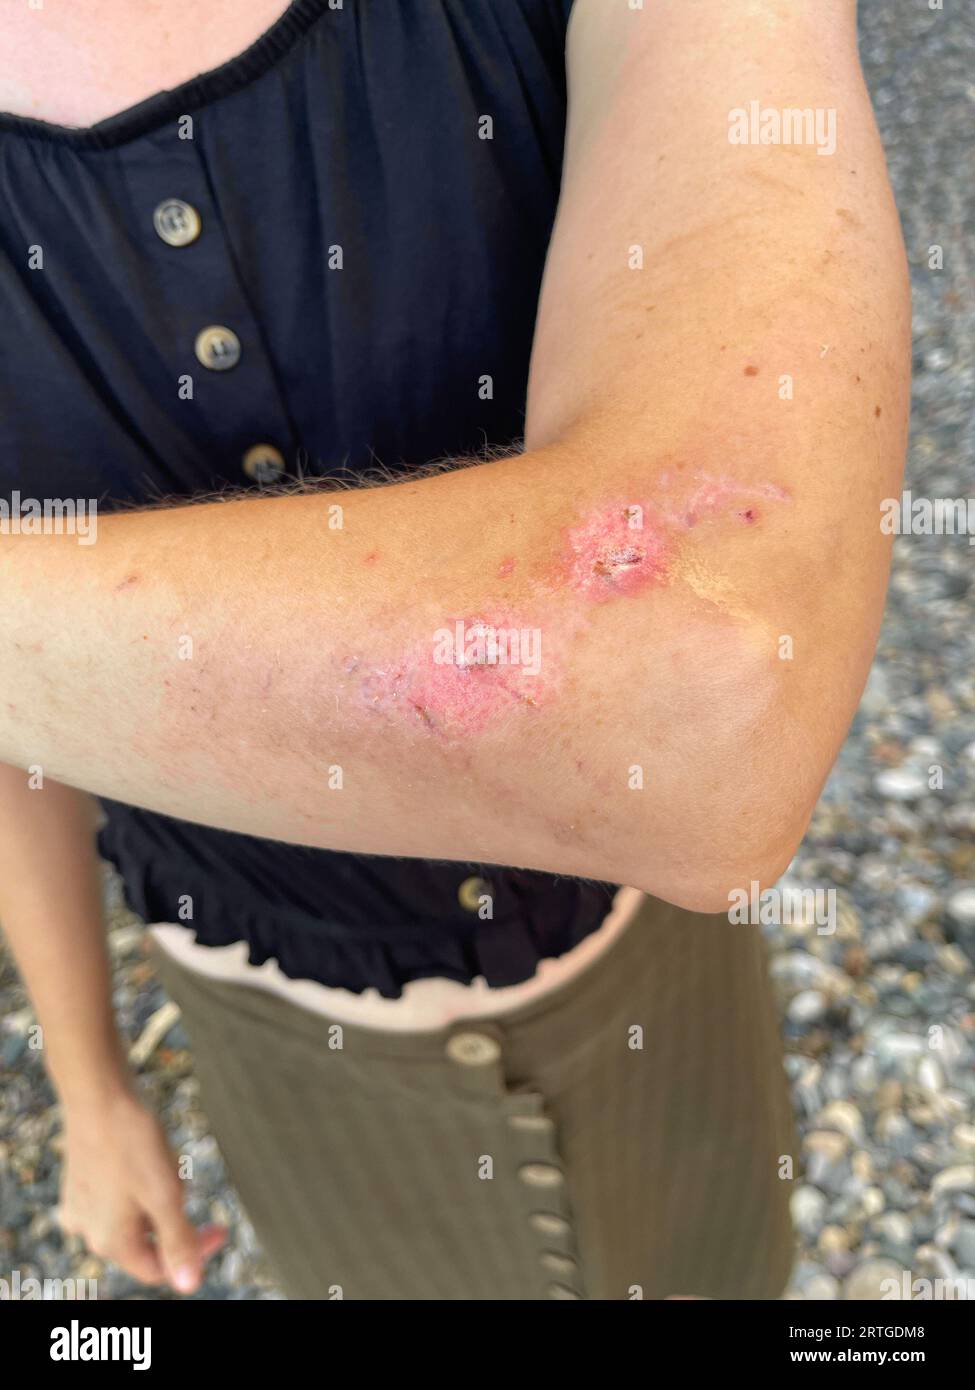 Femme avec une cicatrice au bras après un accident de voiture Banque D'Images